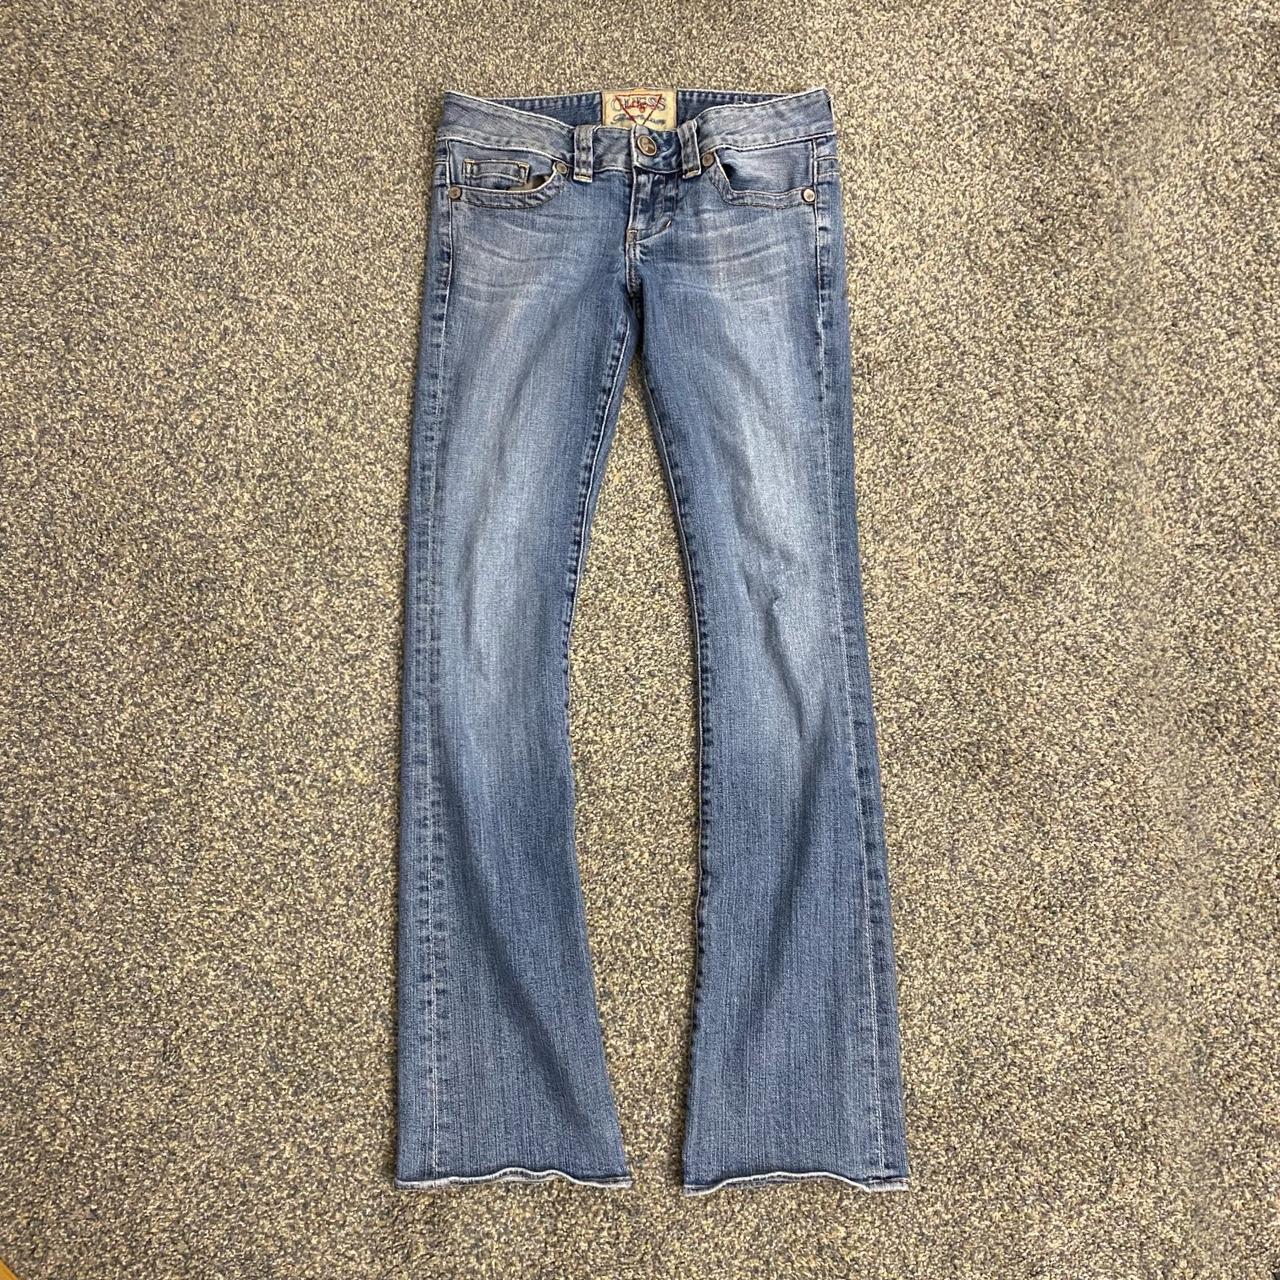 Guess vintage low rise flair jeans SIZE: 28 / 31.5”... - Depop